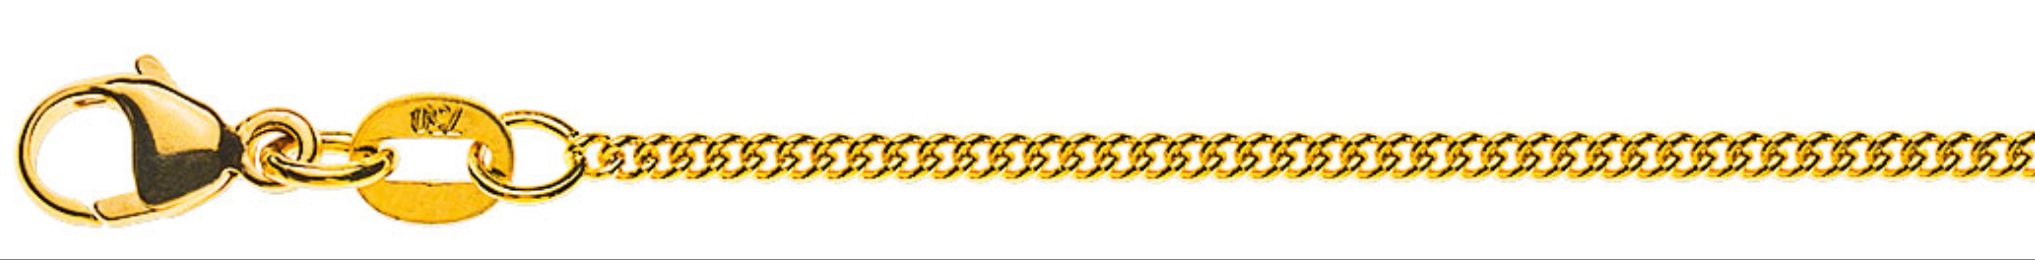 AURONOS Prestige Halskette Gelbgold 18K Rundpanzerkette 40cm 1.6mm